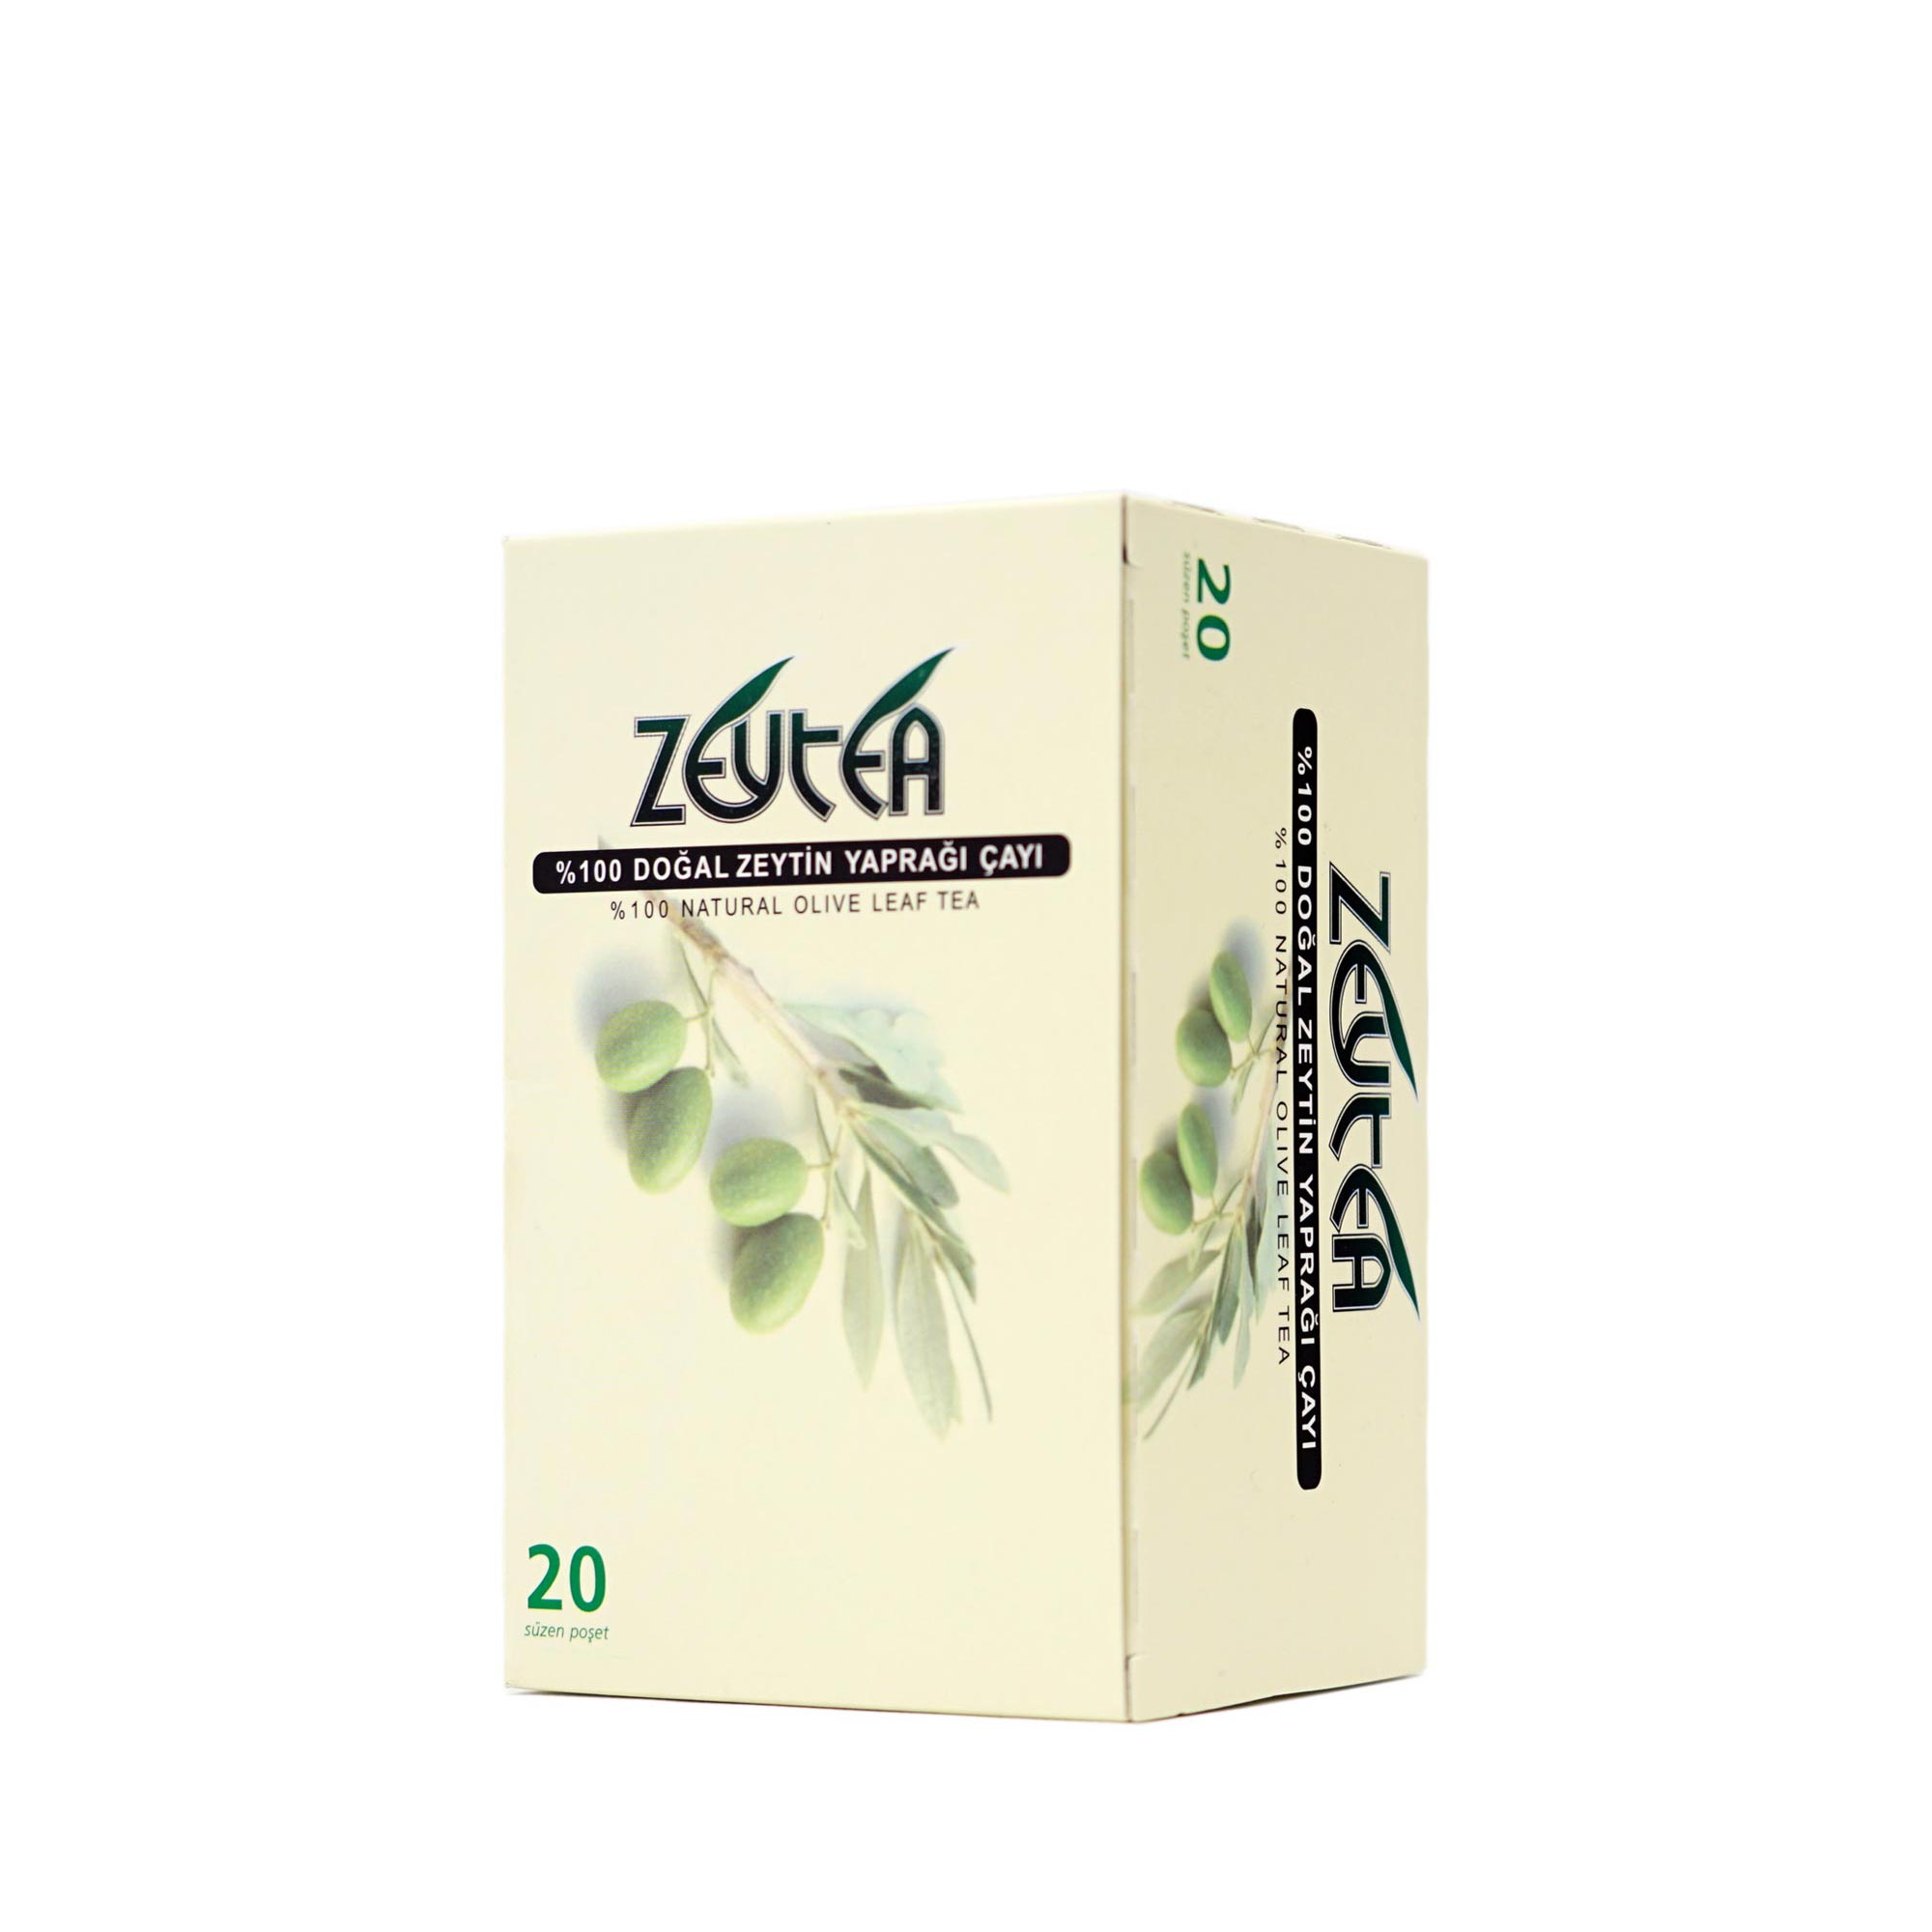 Zeytea %100 Doğal Zeytin Yaprağı Çayı